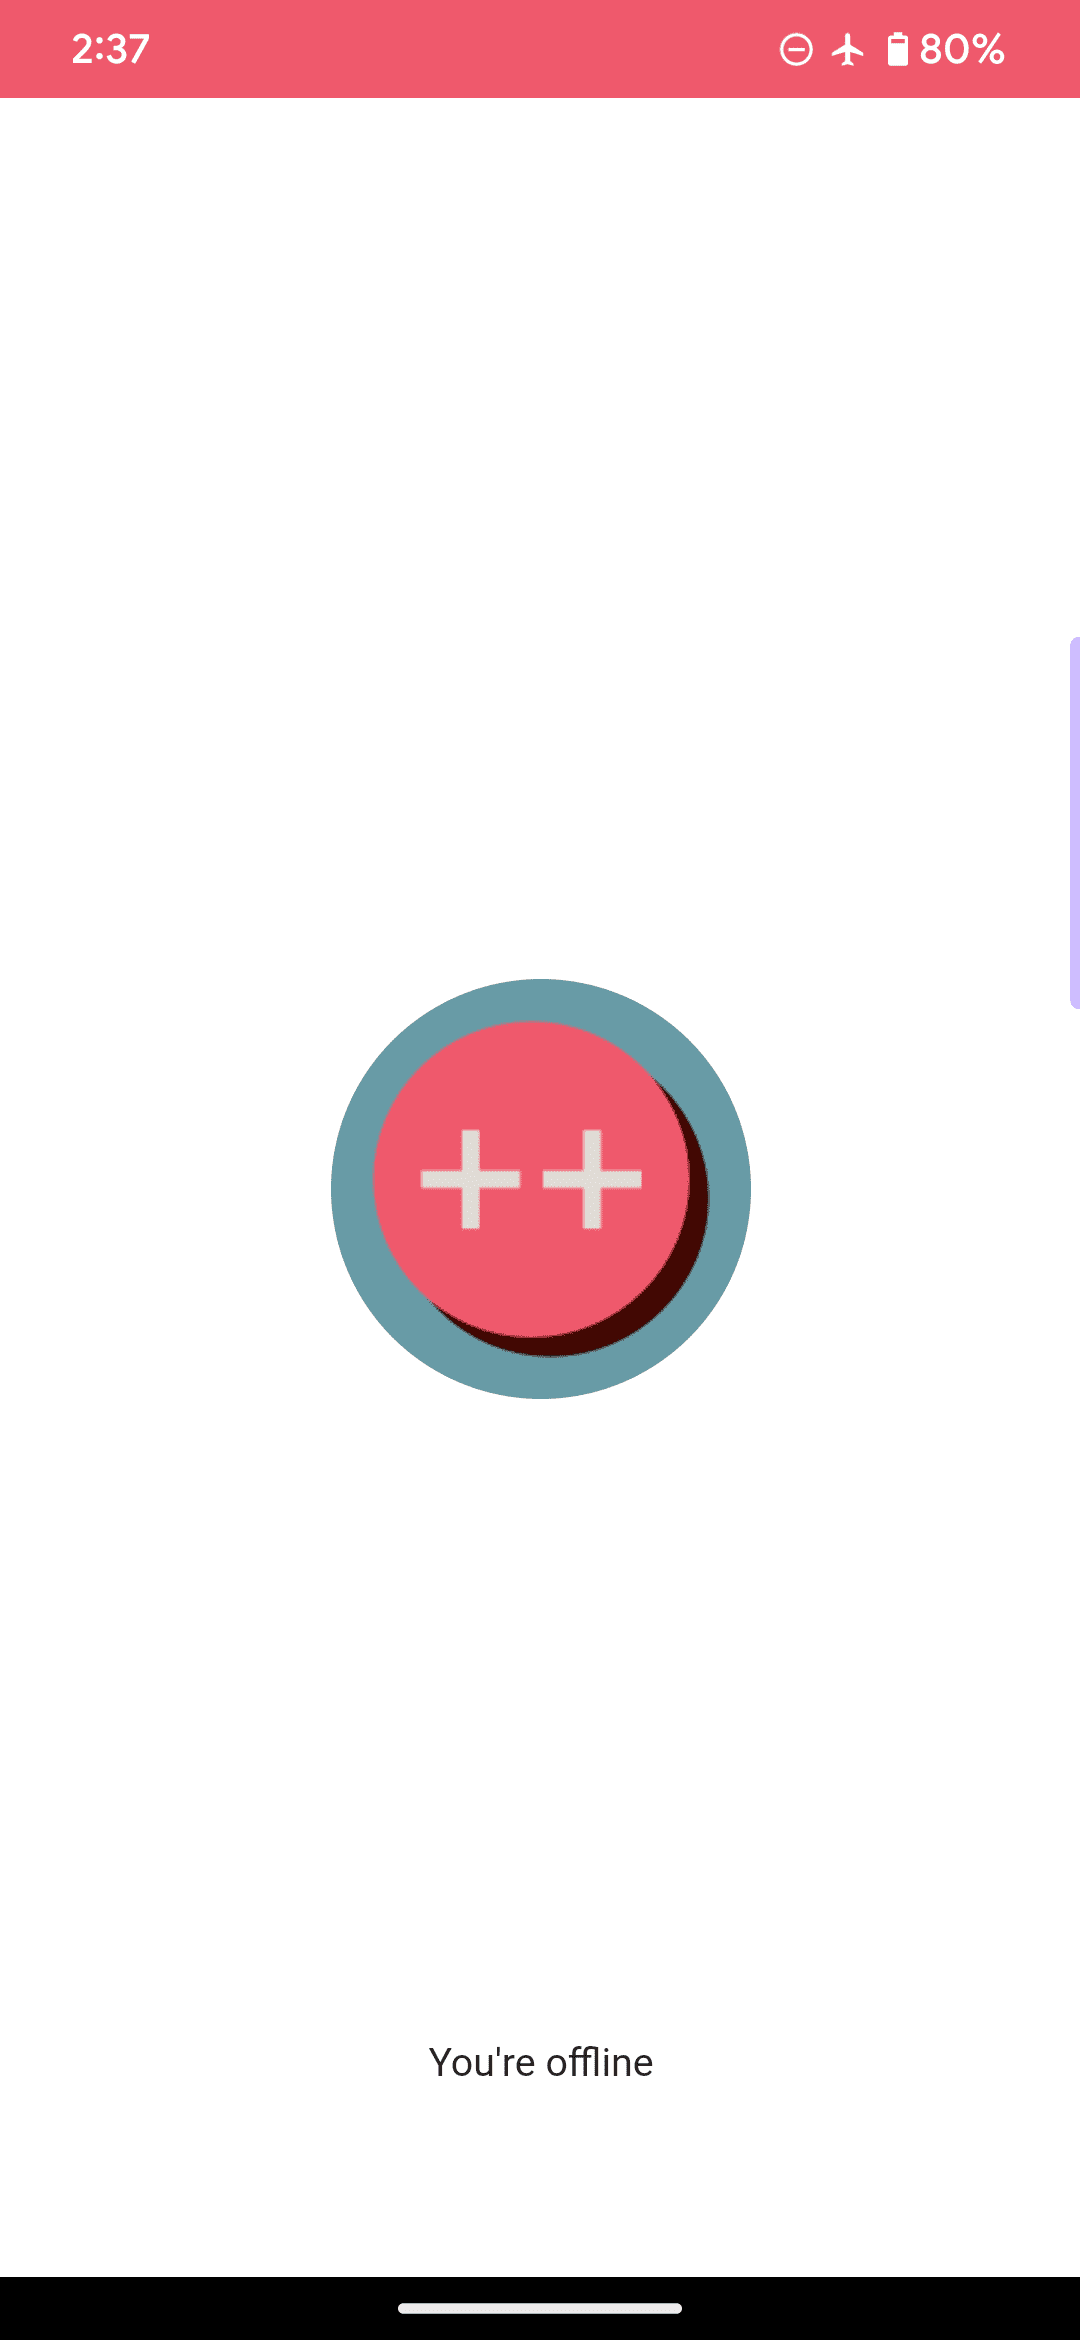 Die Standard-Offline-Seite für eine Beispiel-Web-App, bei der das Logo aus einem rosa Kreis und zwei Pluszeichen besteht und die Meldung „Sie sind offline“ enthält.